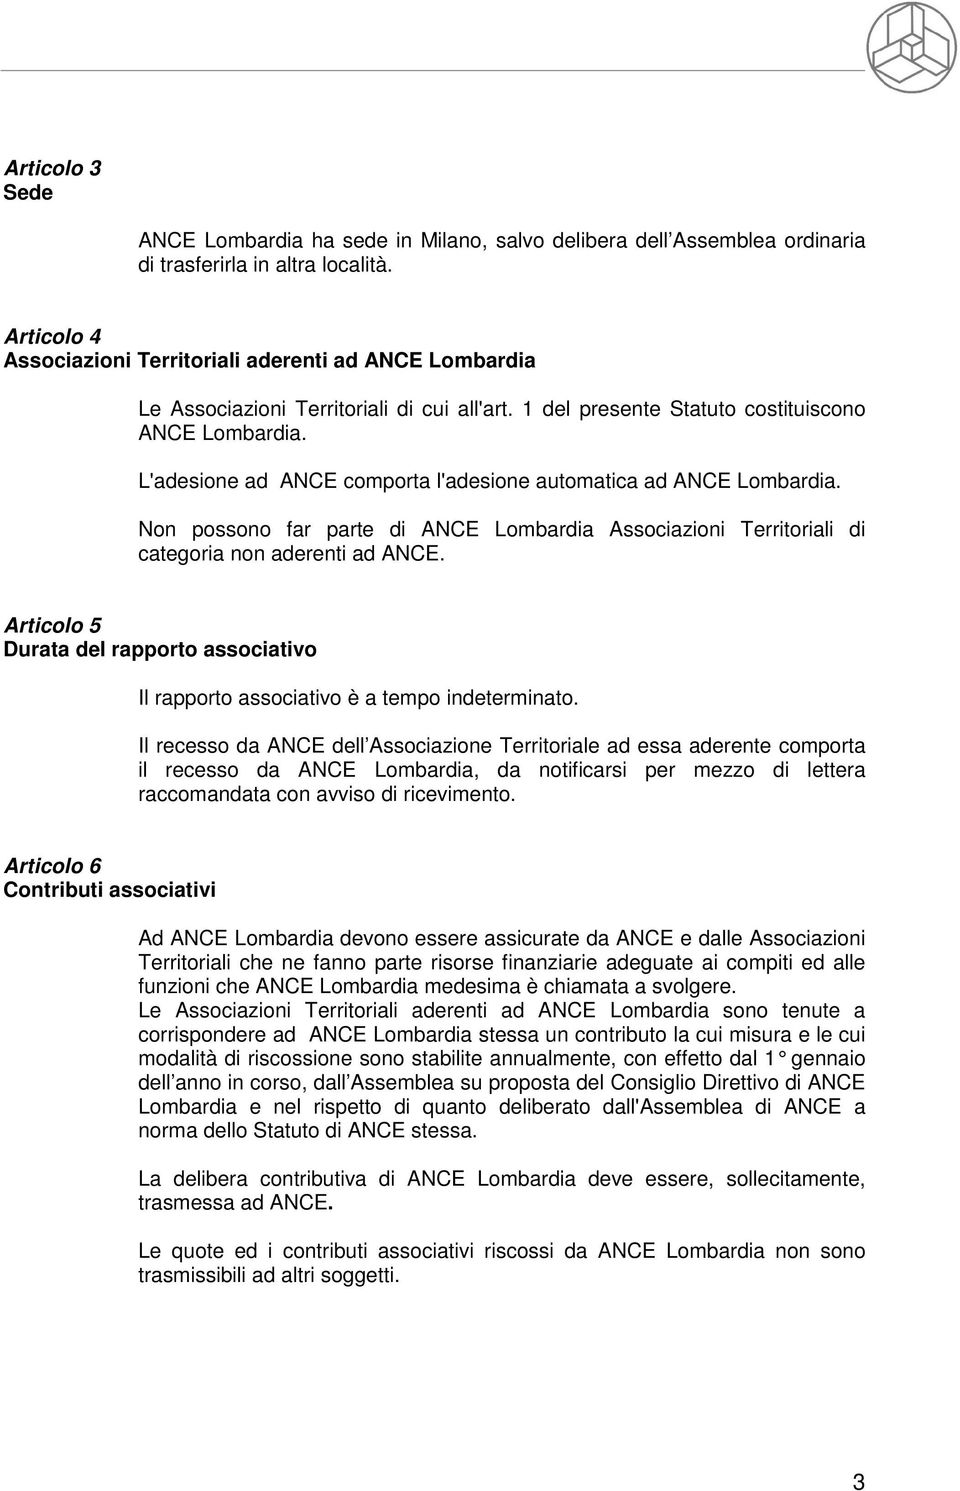 L'adesione ad ANCE comporta l'adesione automatica ad ANCE Lombardia. Non possono far parte di ANCE Lombardia Associazioni Territoriali di categoria non aderenti ad ANCE.